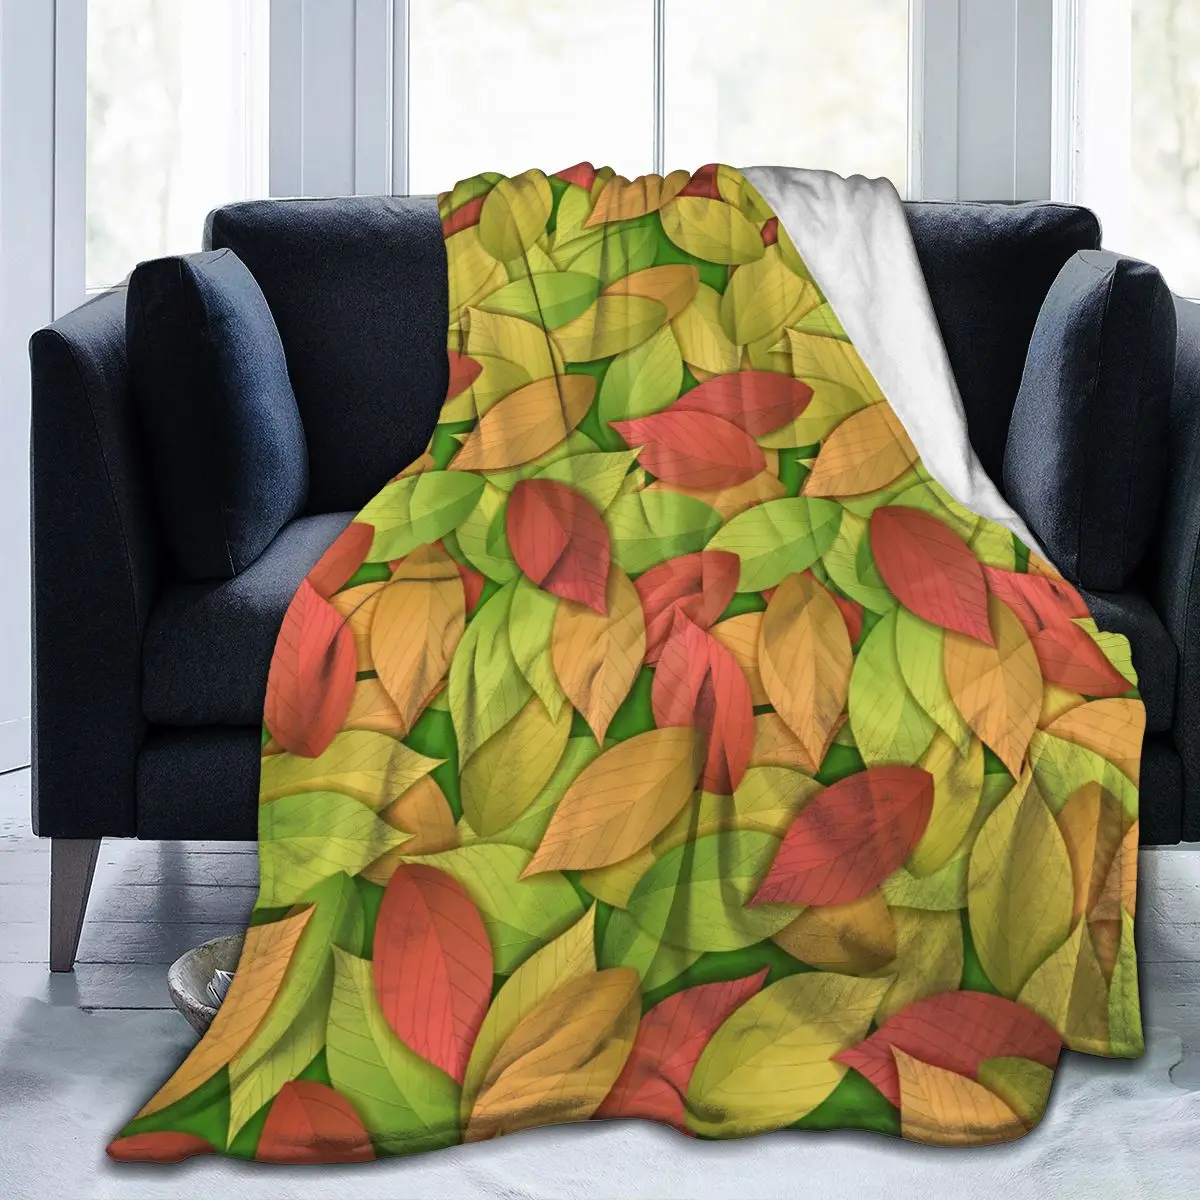 

Фланелевое Одеяло с цветными осенними листьями, мягкое тонкое Флисовое одеяло, покрывало для кровати, дивана, домашний декор, Прямая постав...